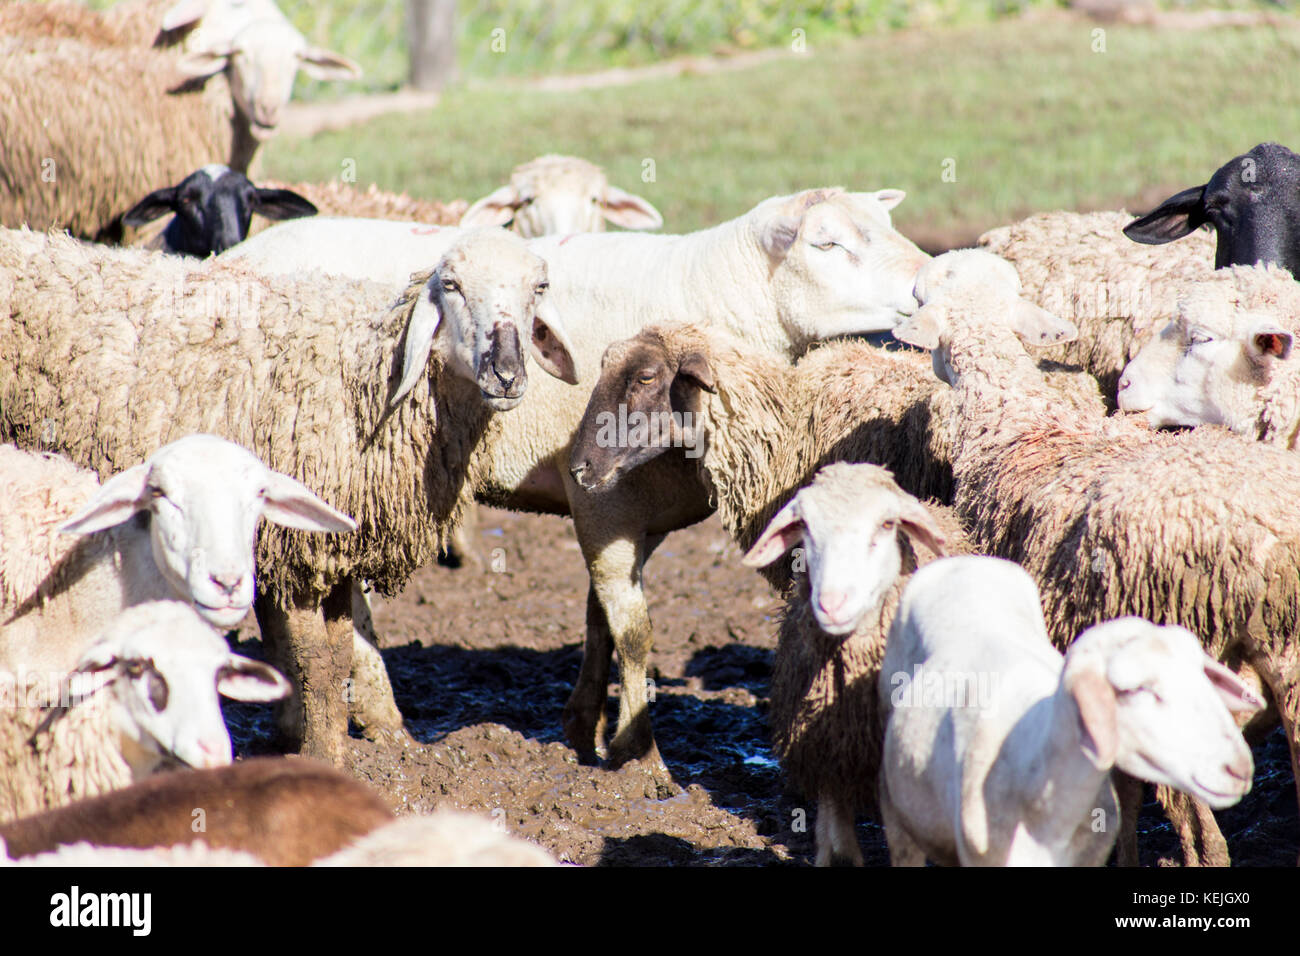 Moutons au sud pantanal, fazenda san francisco, ville de Miranda, Mato grosso do Sul - Brésil Banque D'Images